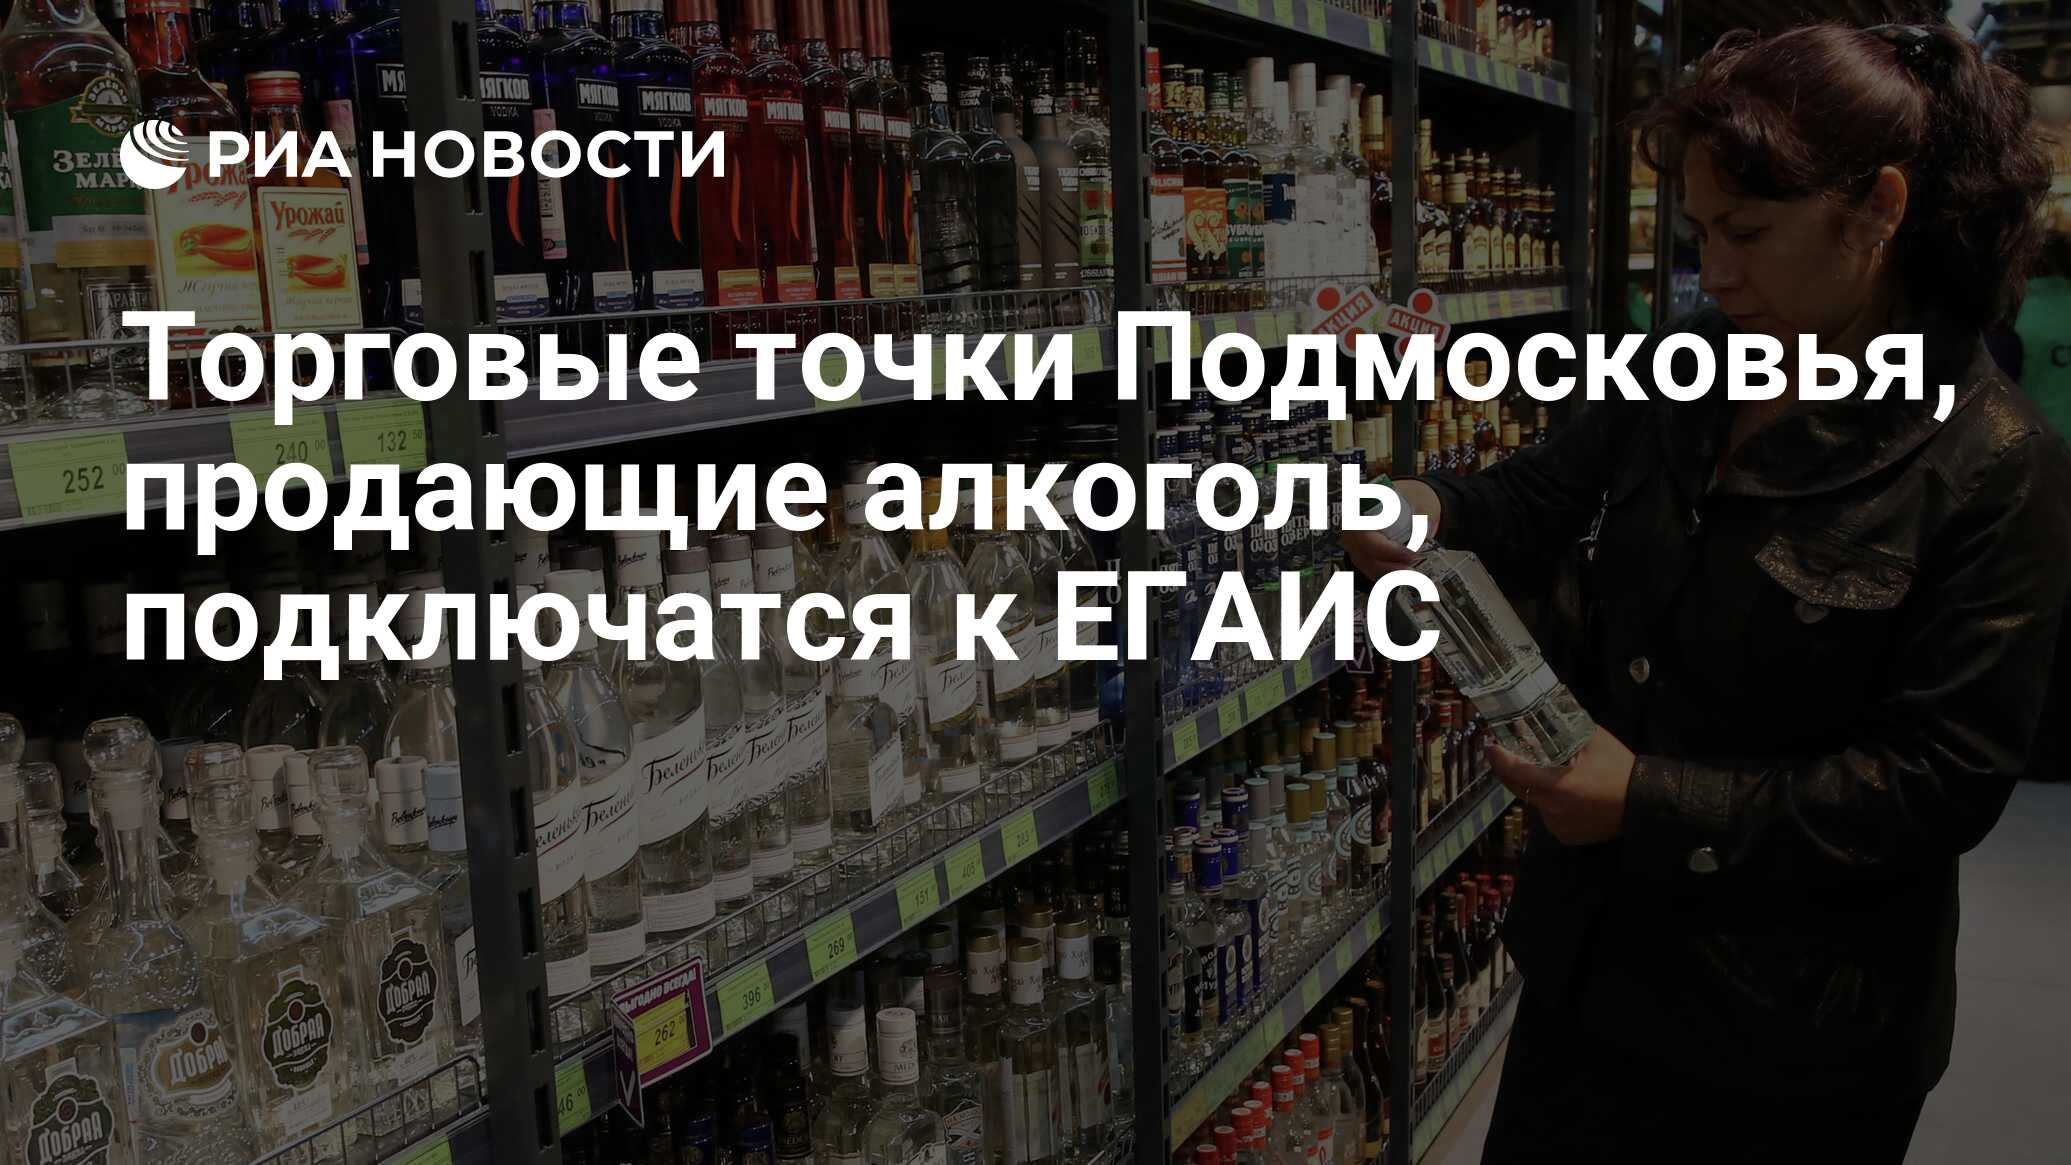 Можно ли сегодня выпить. Импортный алкоголь. Алкоголь внесли в список для параллельного импорта. Алкоголизм в России.